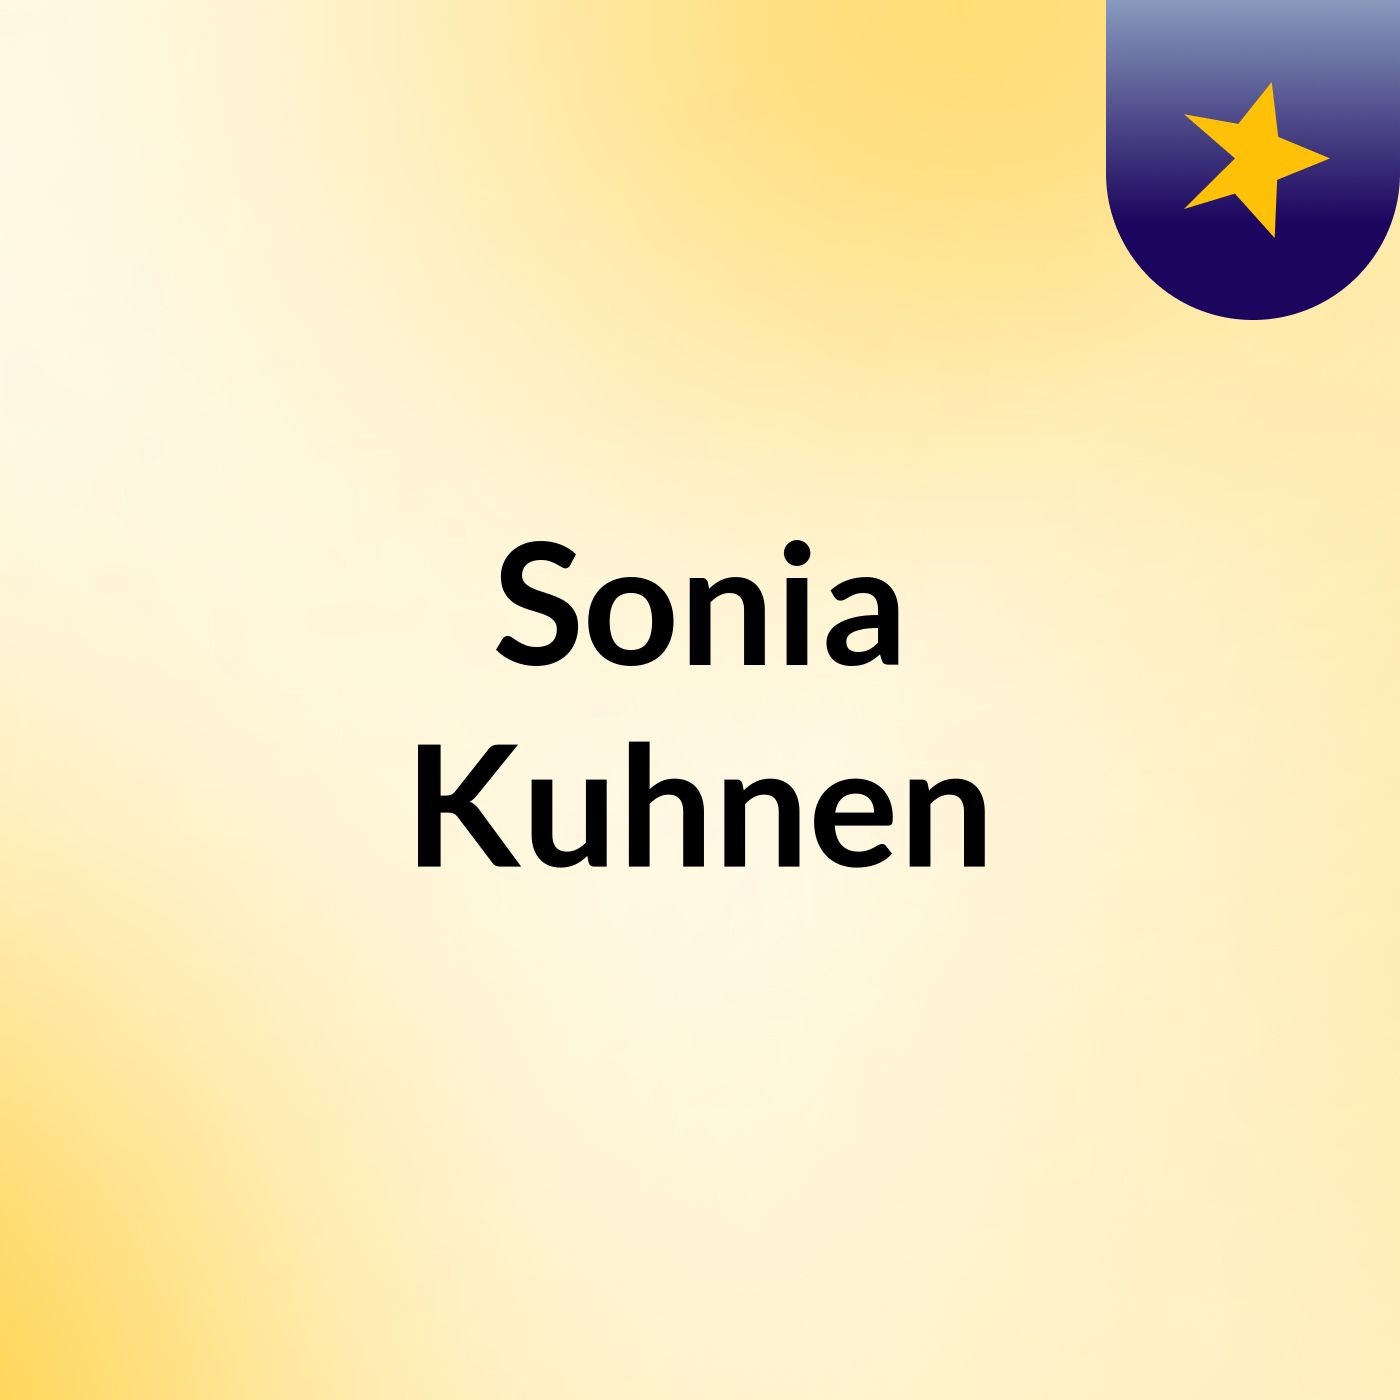 Sonia Kuhnen